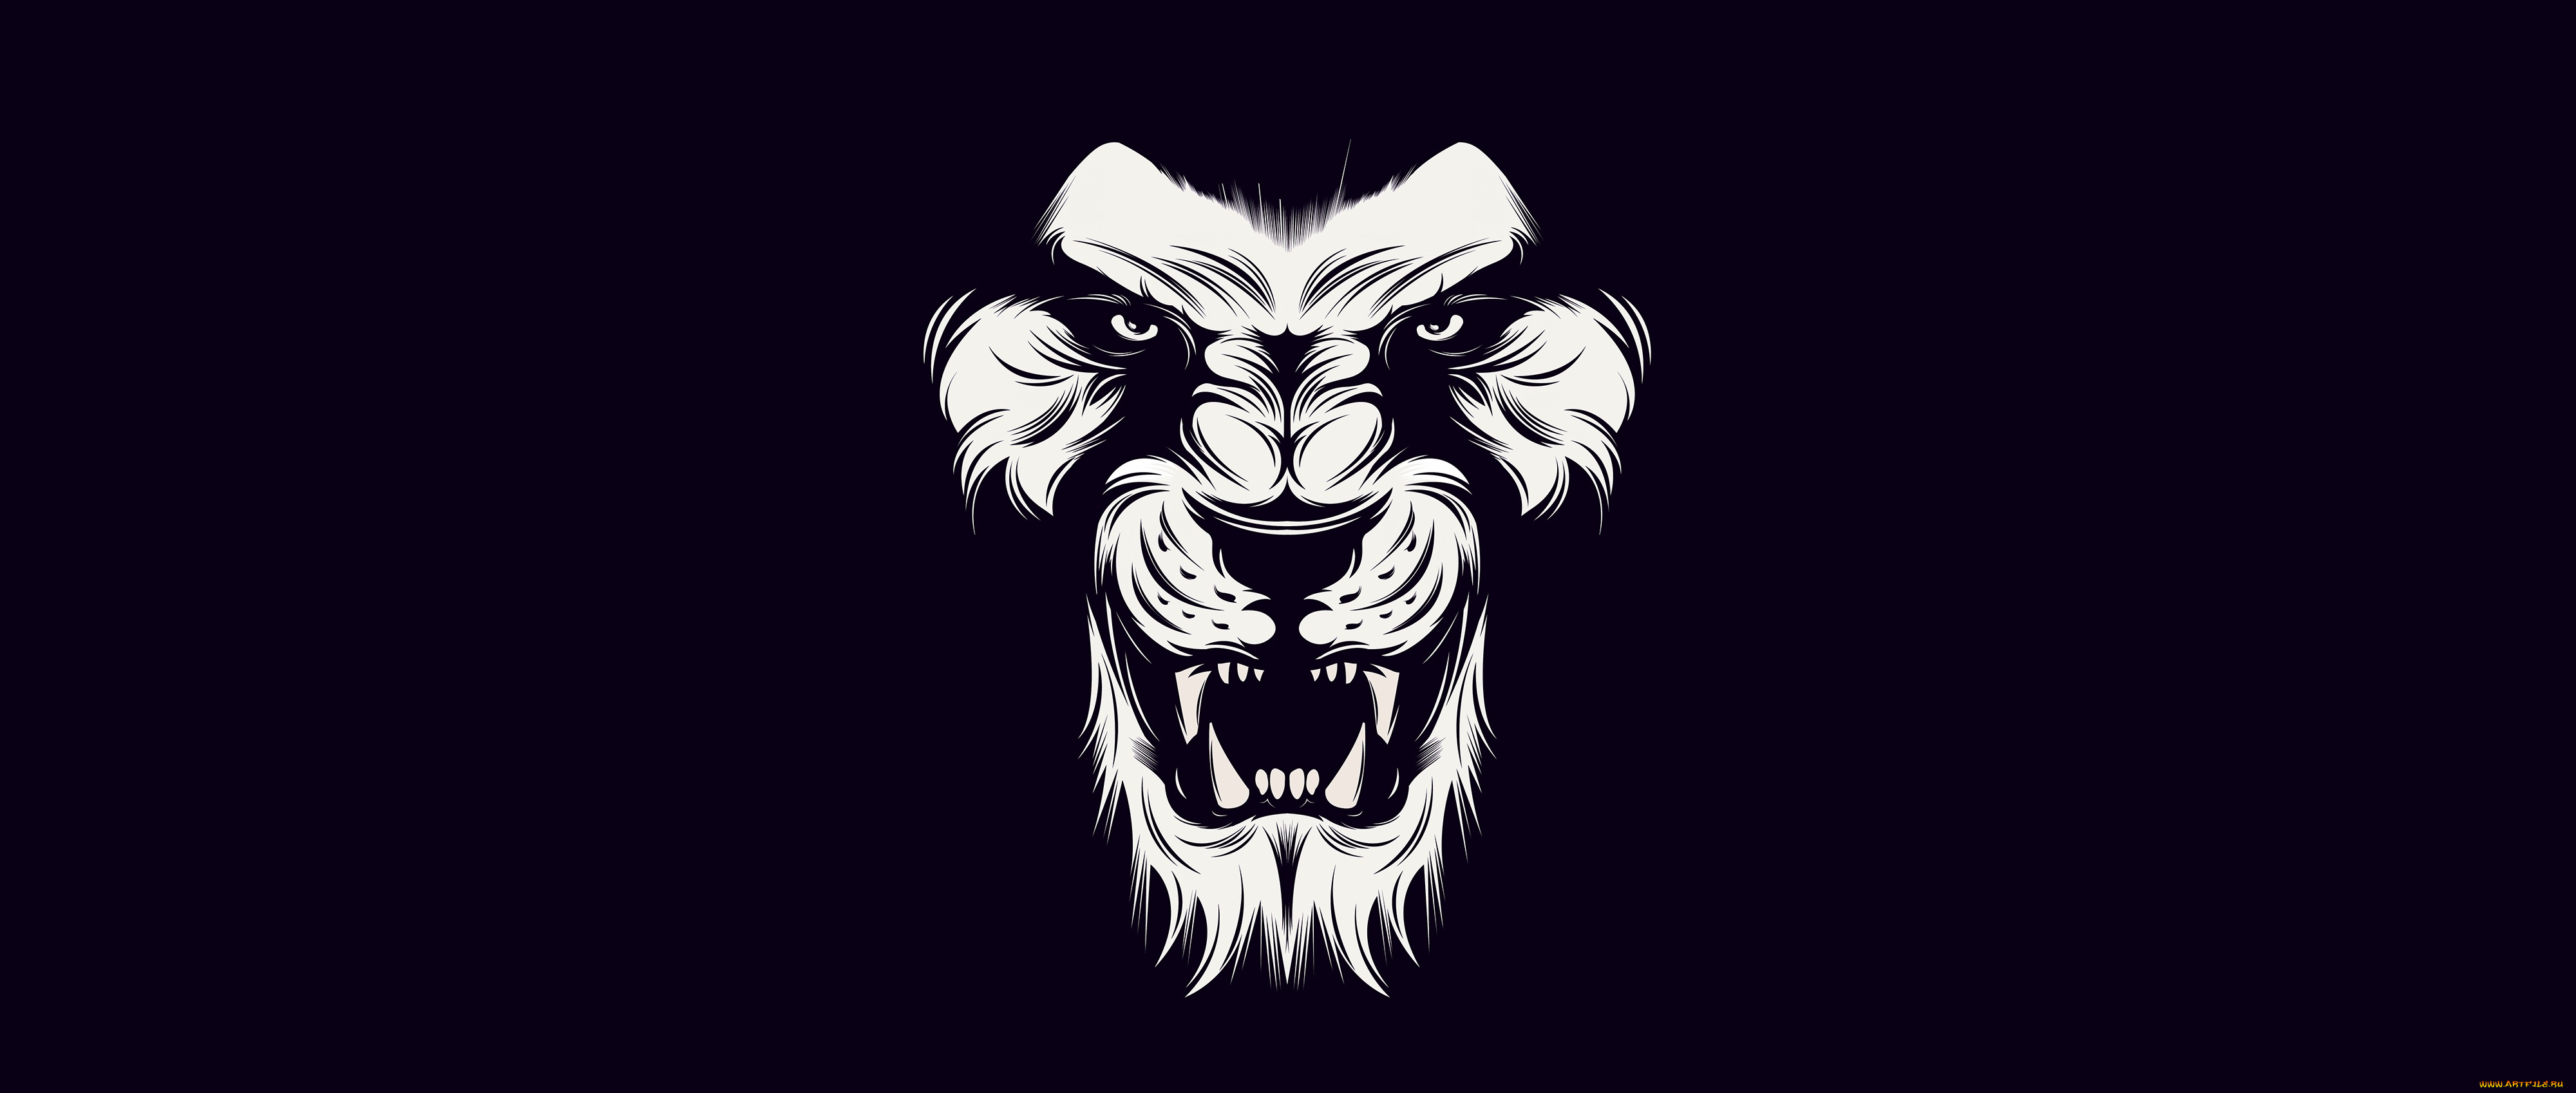 рисованное, минимализм, black, lion, white